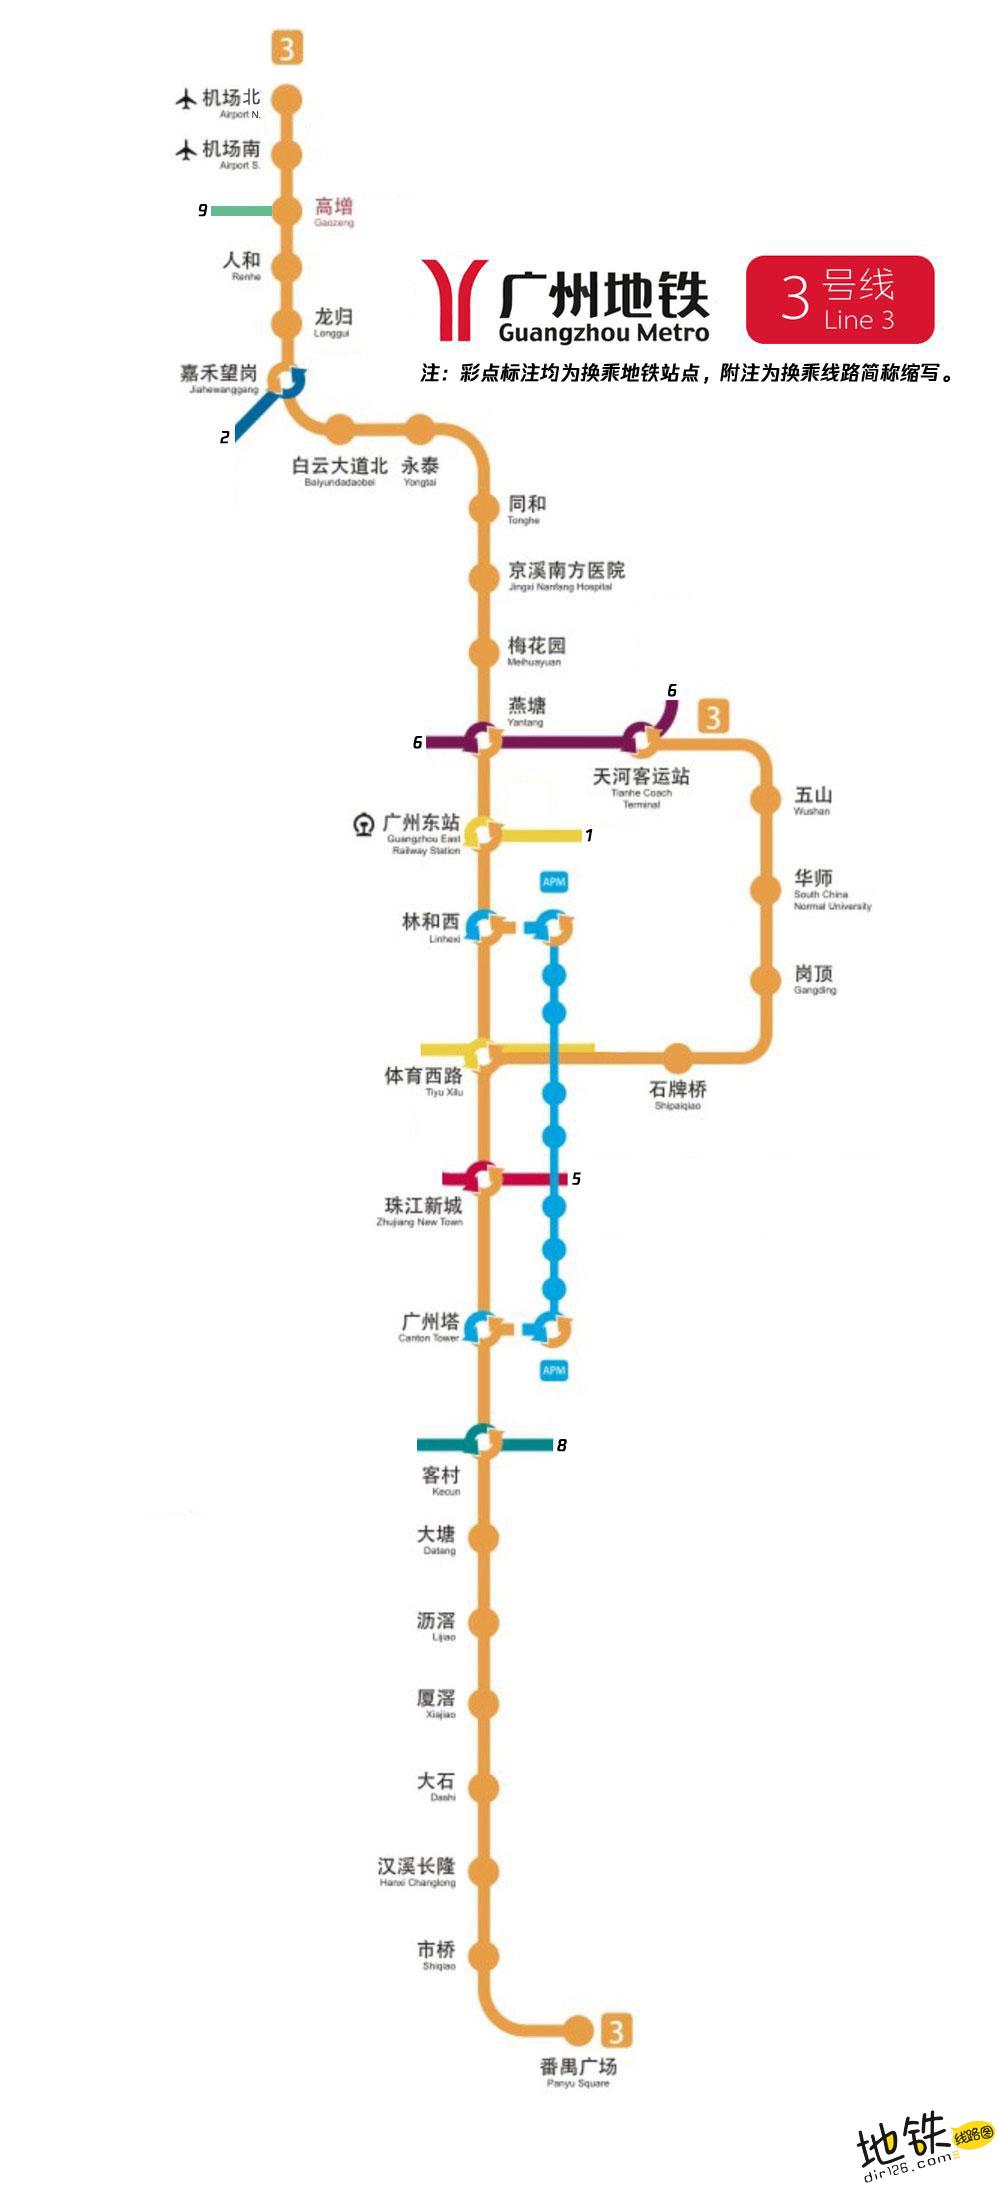 广州地铁3号线线路图 广州地铁3号线 广州地铁三号线 广州地铁线路图